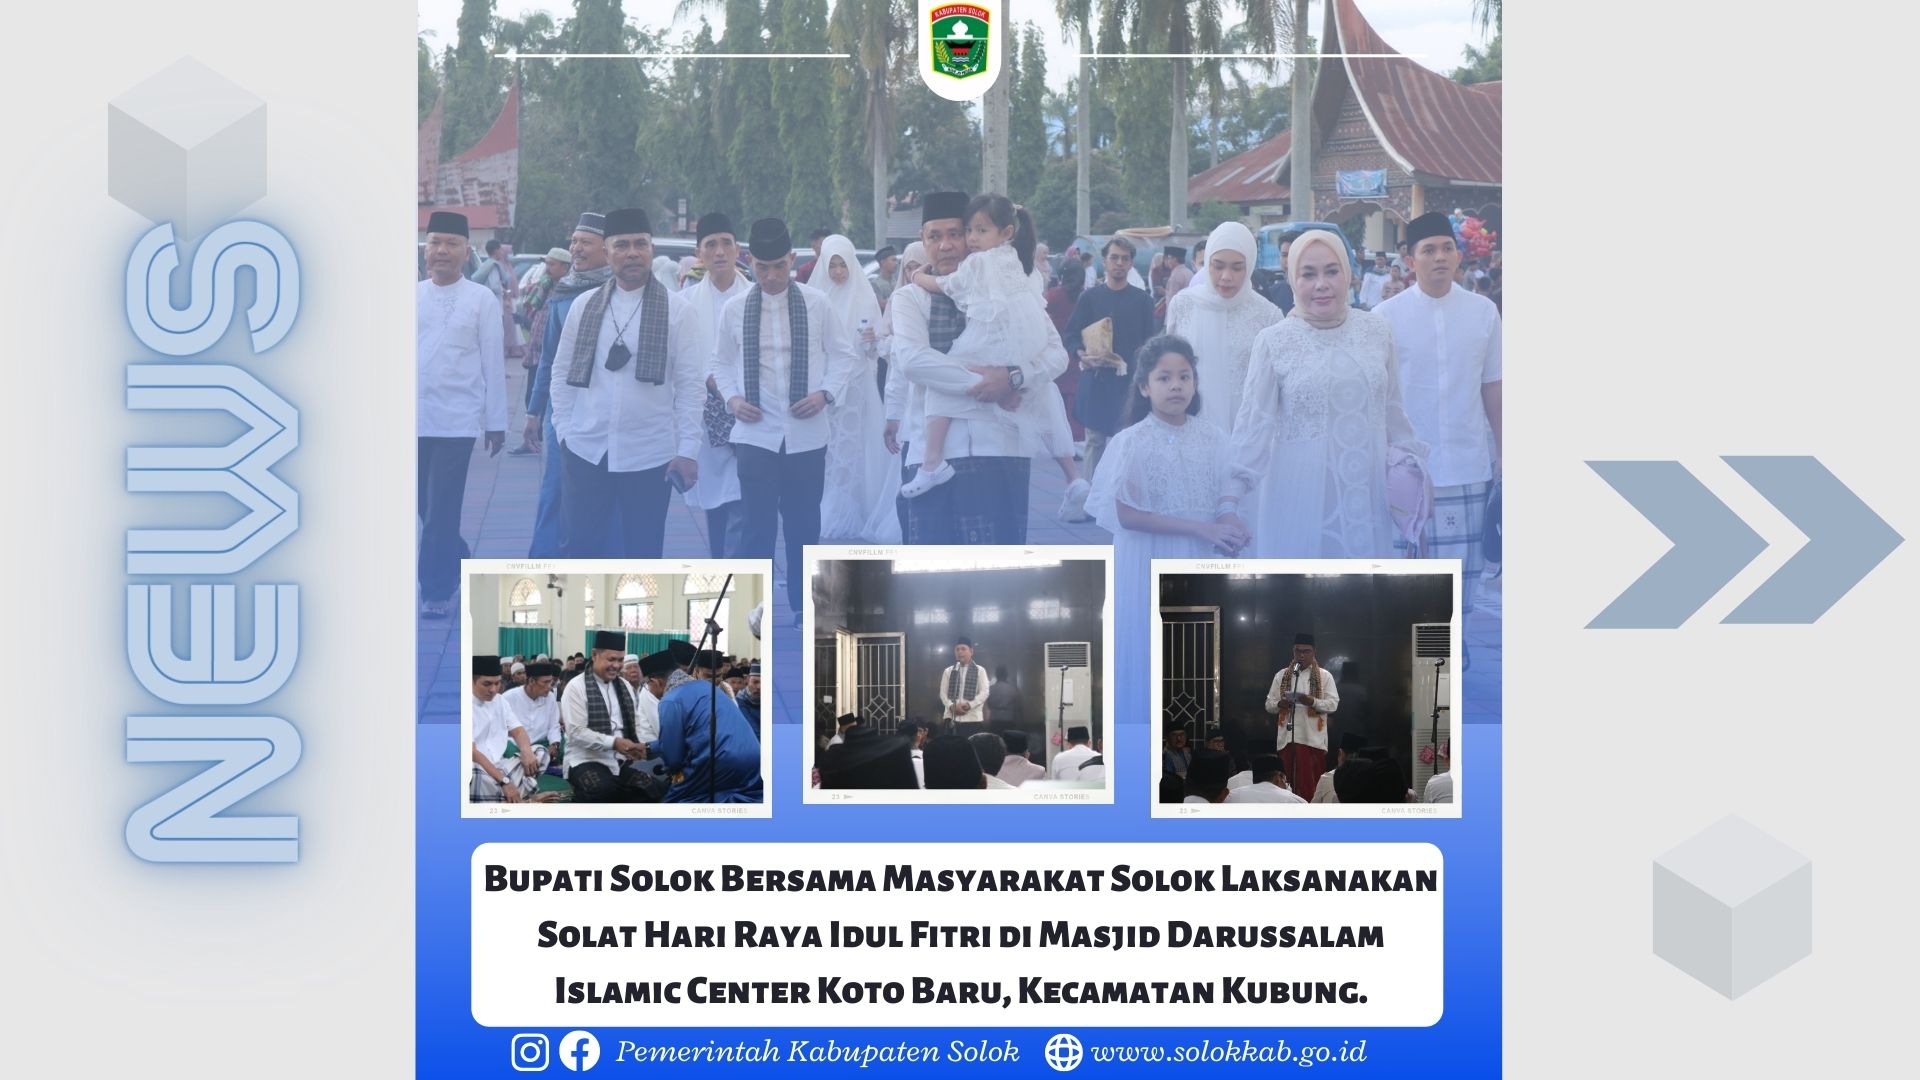 Bupati Solok Bersama Masyarakat Solok Laksanakan Solat Hari Raya Idul Fitri di Masjid Darussalam Islamic Center Koto Baru, Kecamatan Kubung.